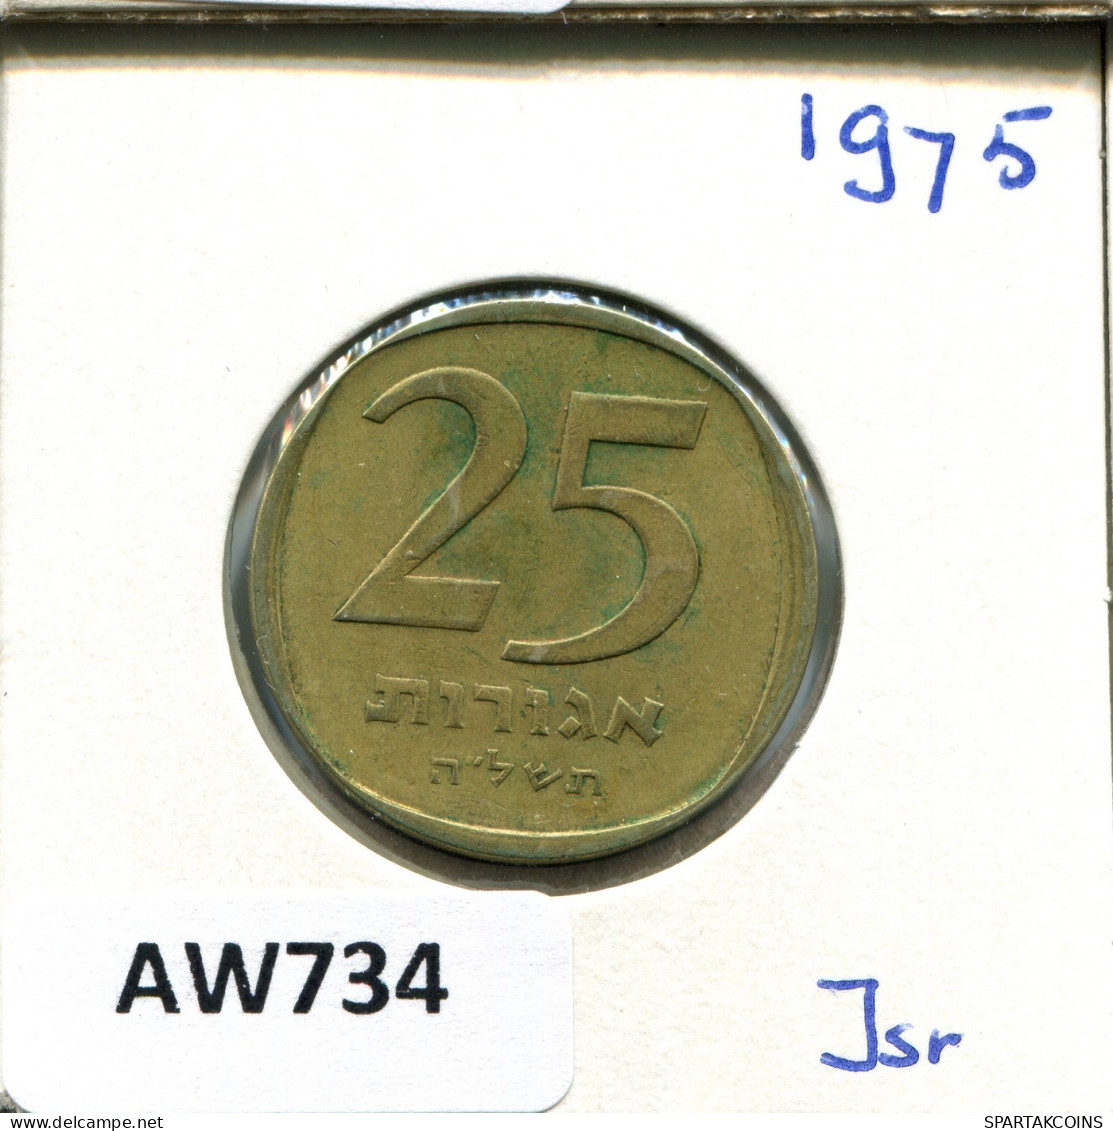 25 AGOROT 1975 ISRAEL Moneda #AW734.E.A - Israel